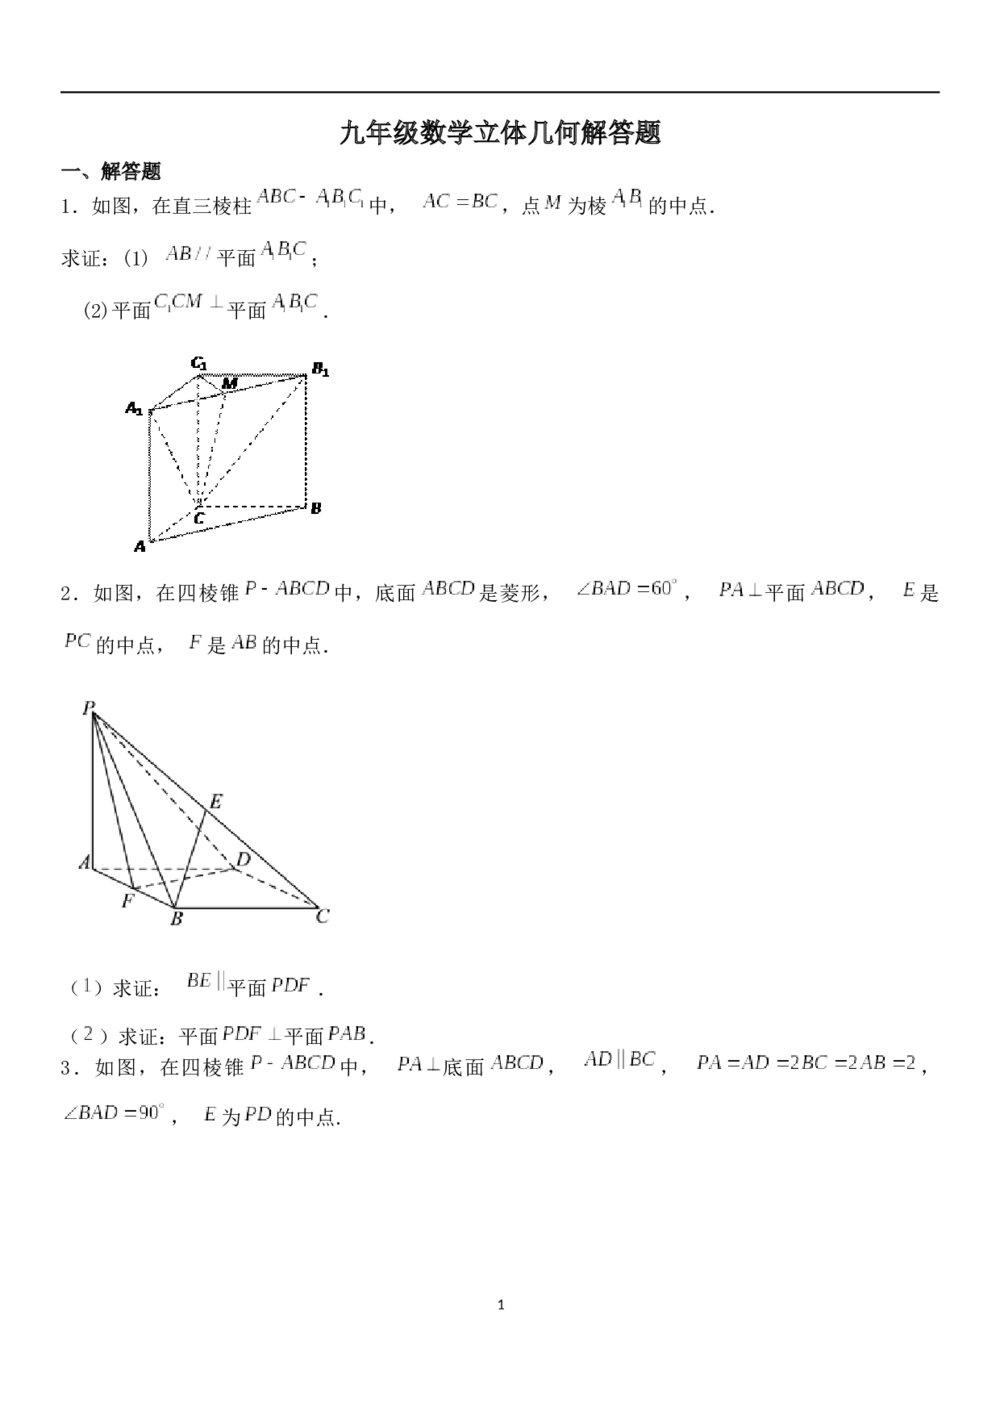 九年级数学试题试卷《立体几何》解答题+参考答案1